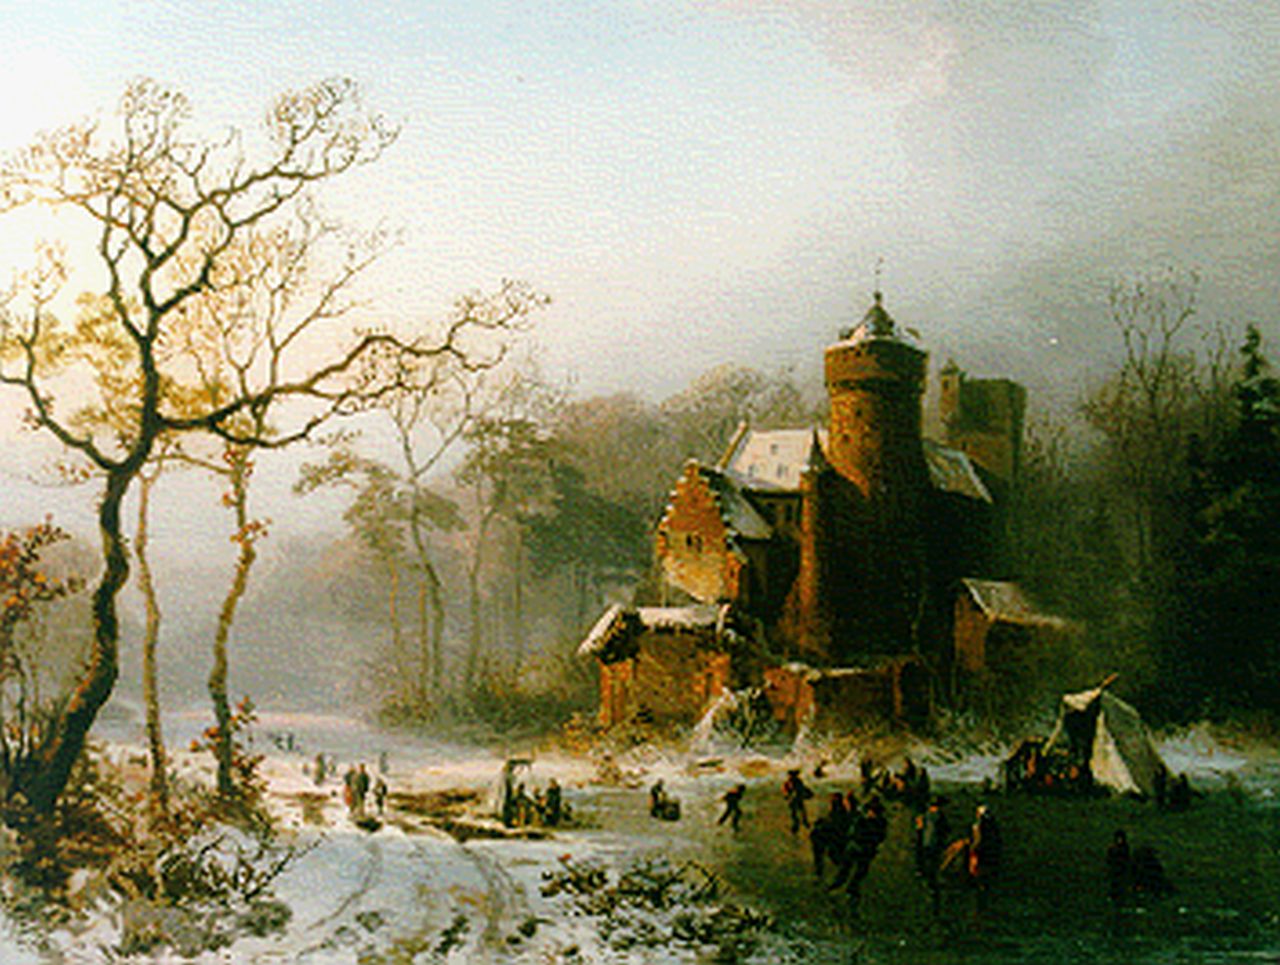 Bylandt A.E.A. van | Alfred Edouard Agenor van Bylandt, Schaatsers op een meer bij een kasteel, olieverf op paneel 31,7 x 42,5 cm